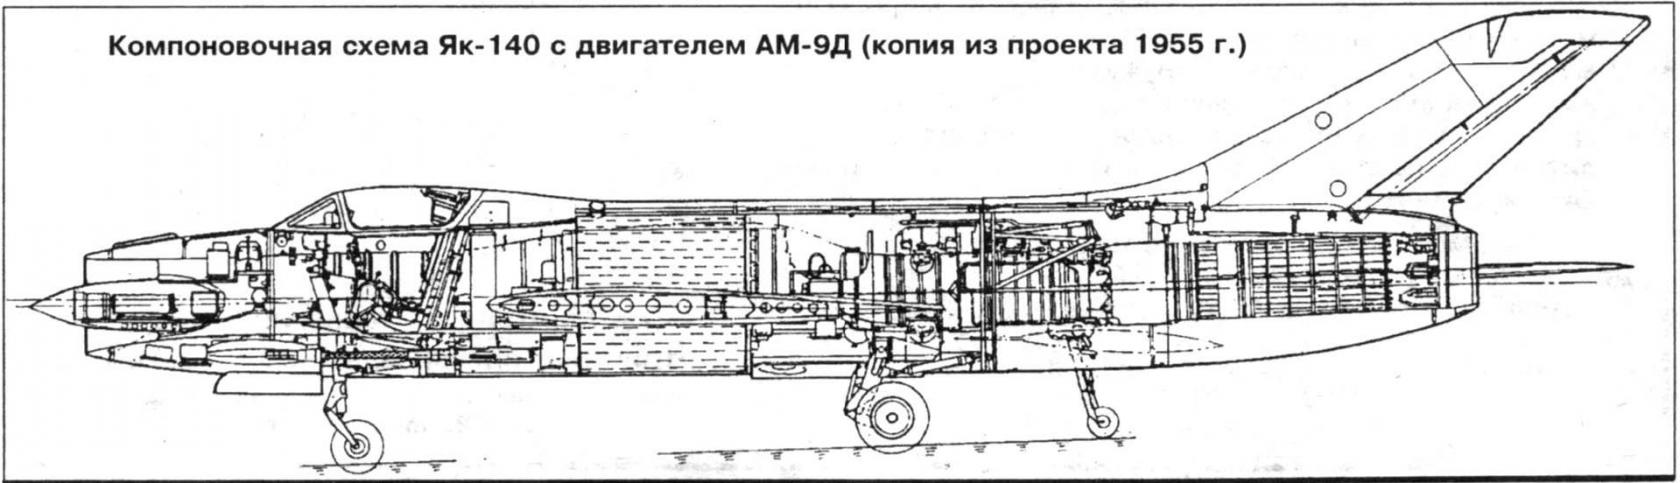 В справочниках не значится. Опытный истребитель Як-140. СССР